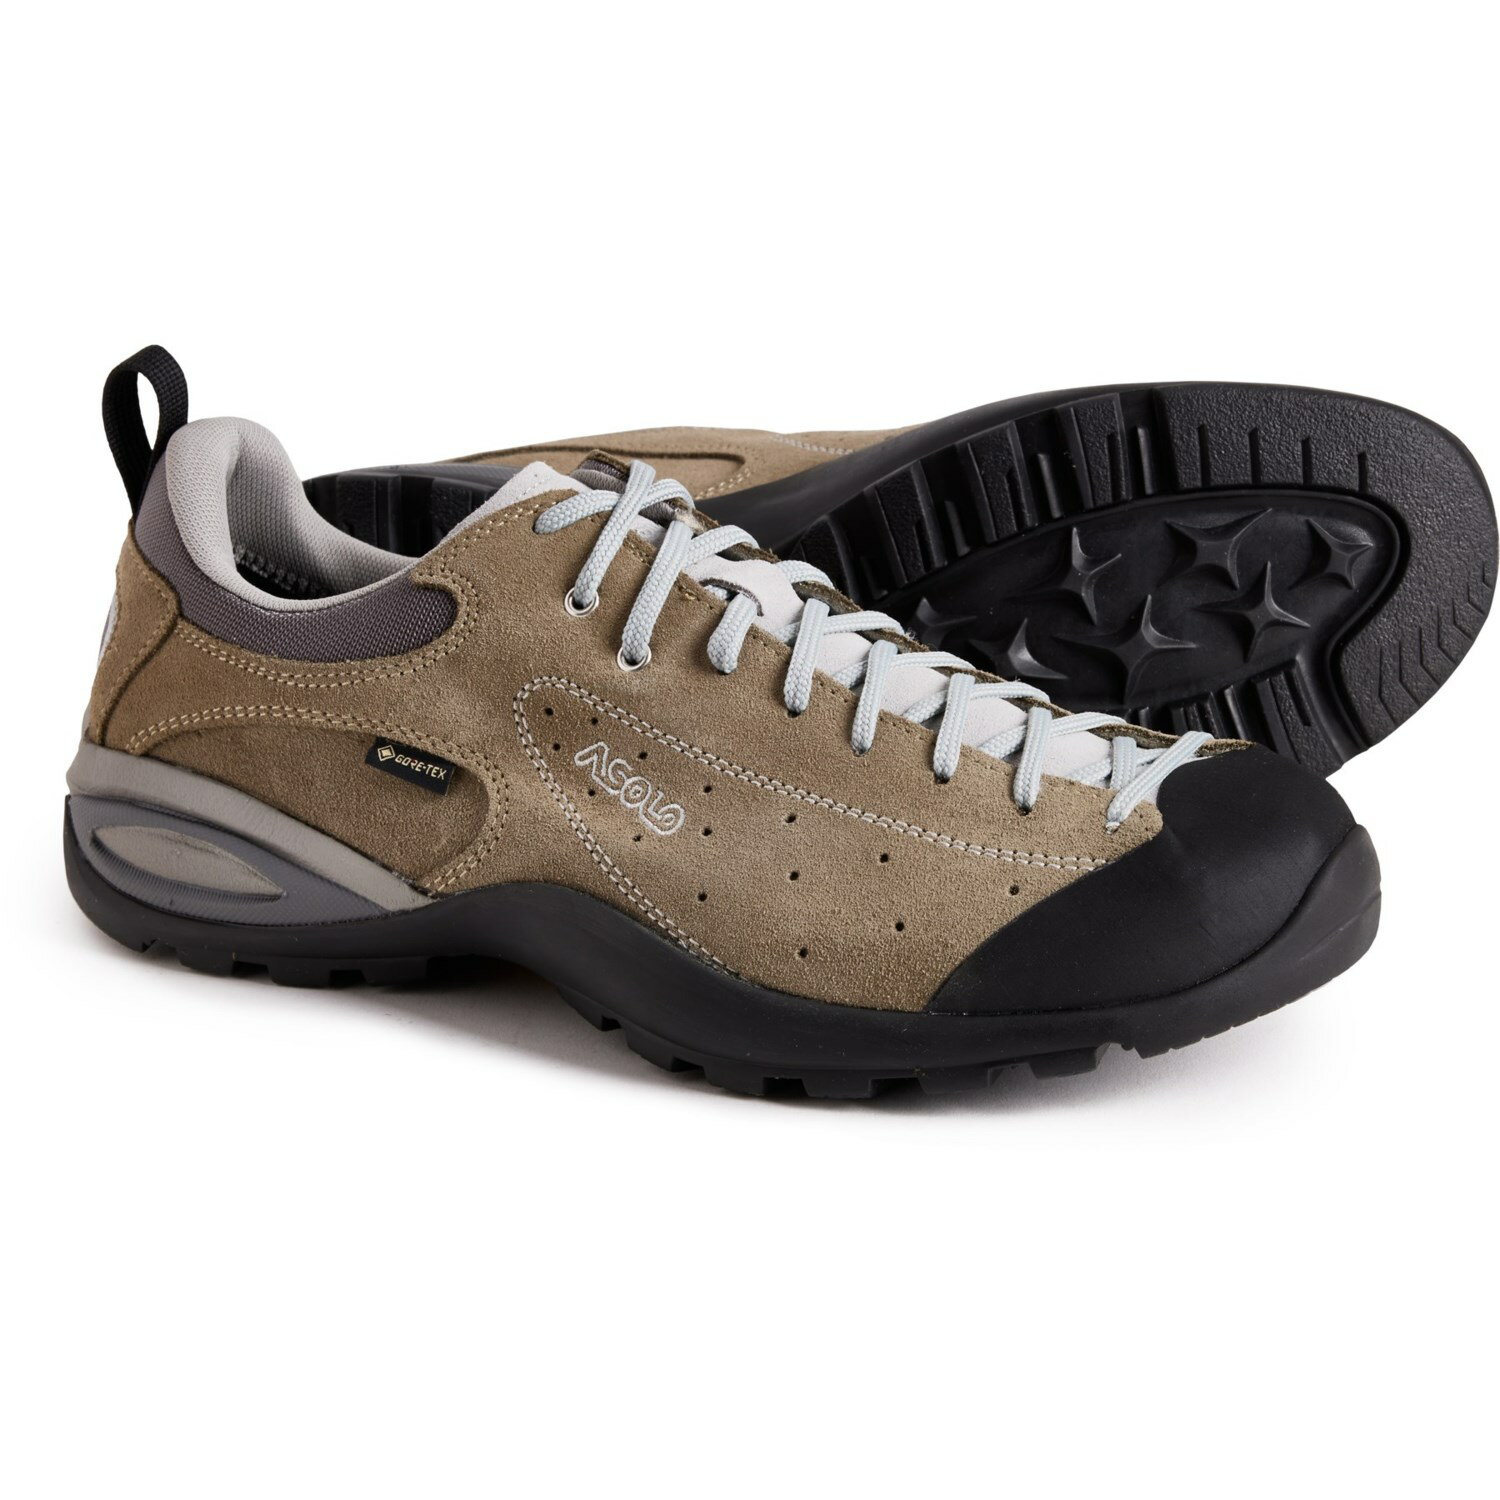 (取寄) アゾロ メンズ メイド イン ヨーロッパ シバ GV ゴア-テックス ハイキング シューズ Asolo men Made in Europe Shiver GV Gore-Tex Hiking Shoes (For Men) Tundra